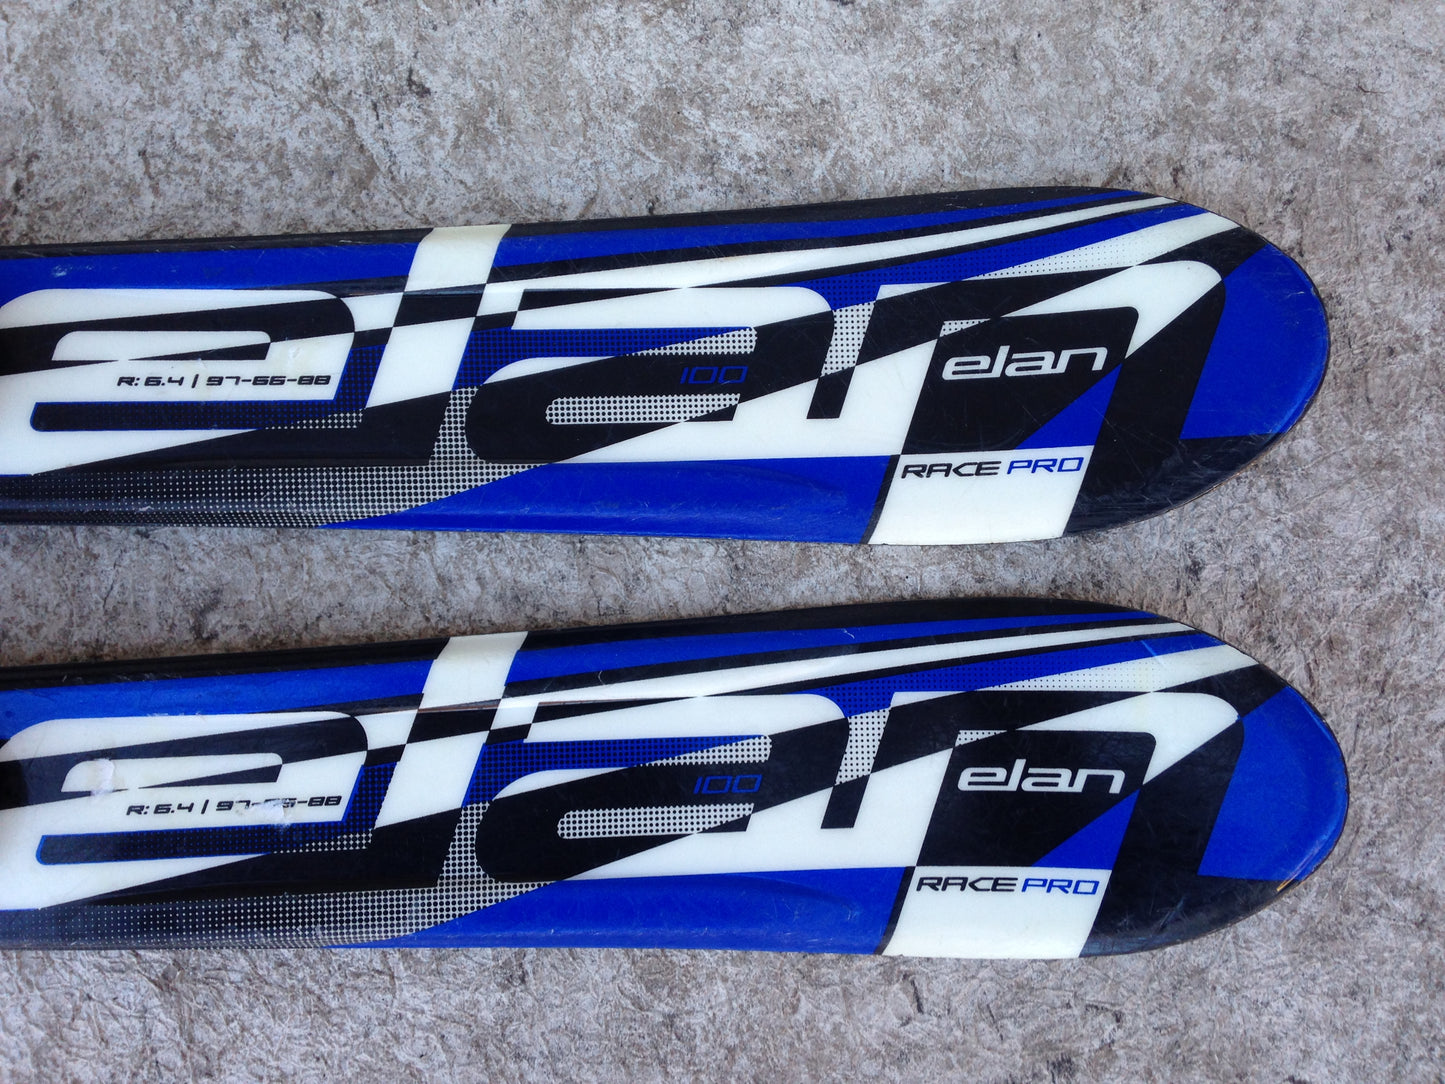 Ski 100 Elan Race Pro Blue Black Parabolic With Bindings